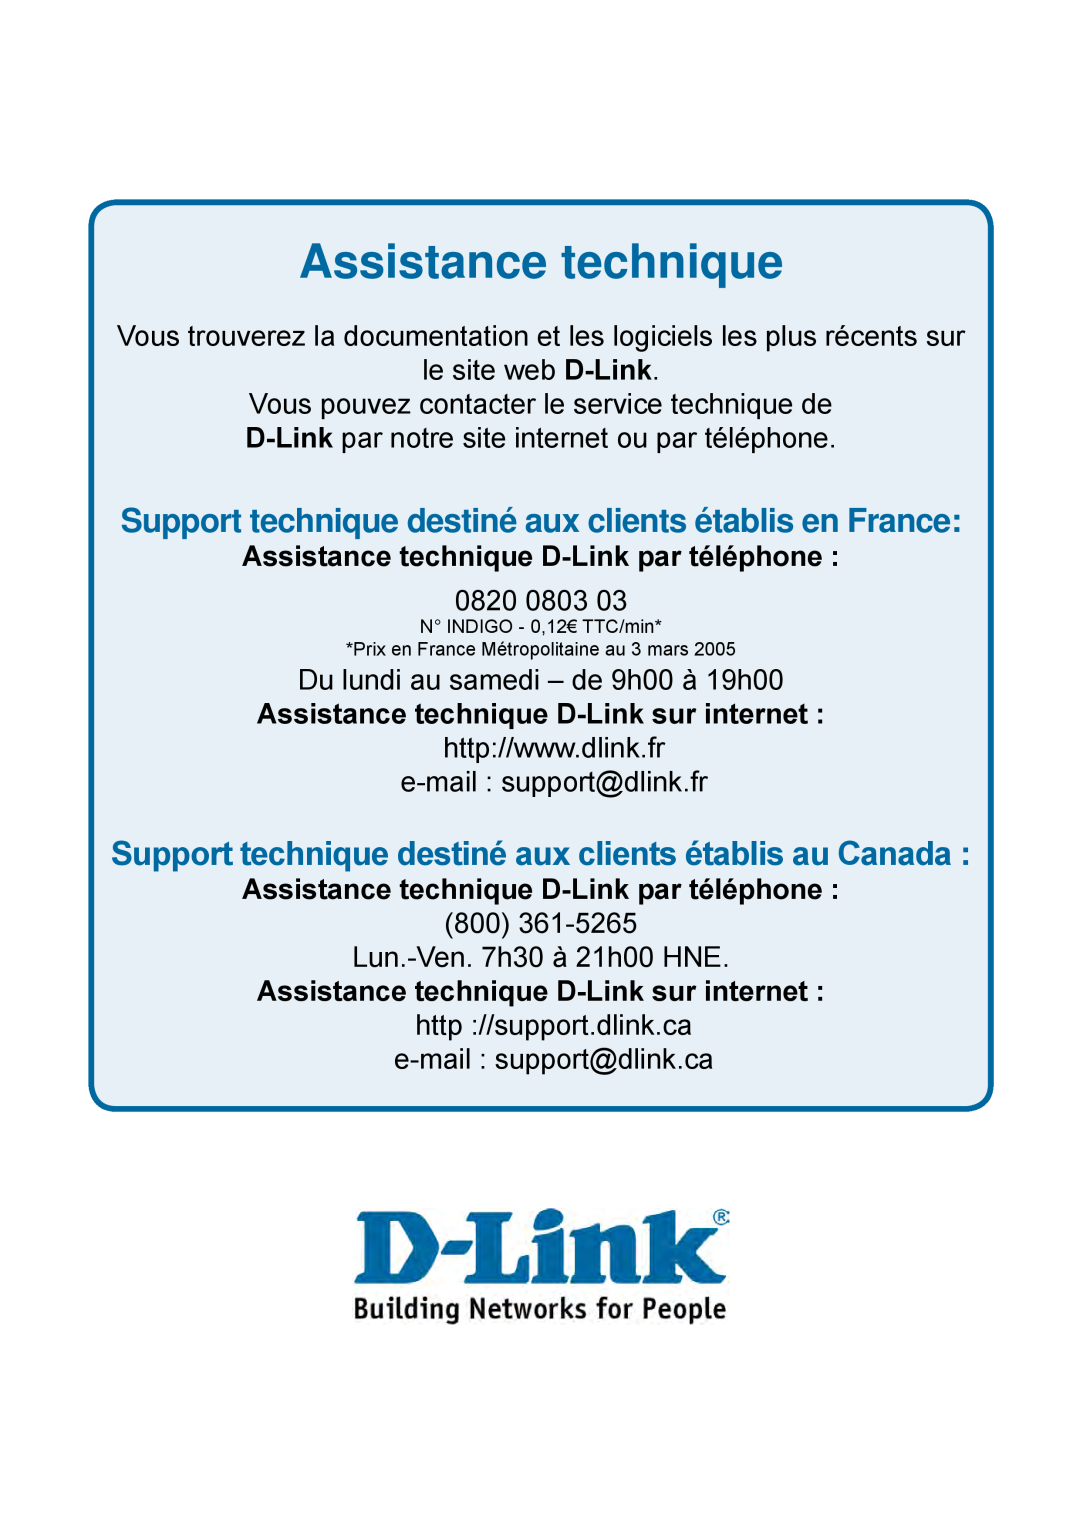 D-Link DES-1228P user manual Assistance technique, Support technique destiné aux clients établis en France 